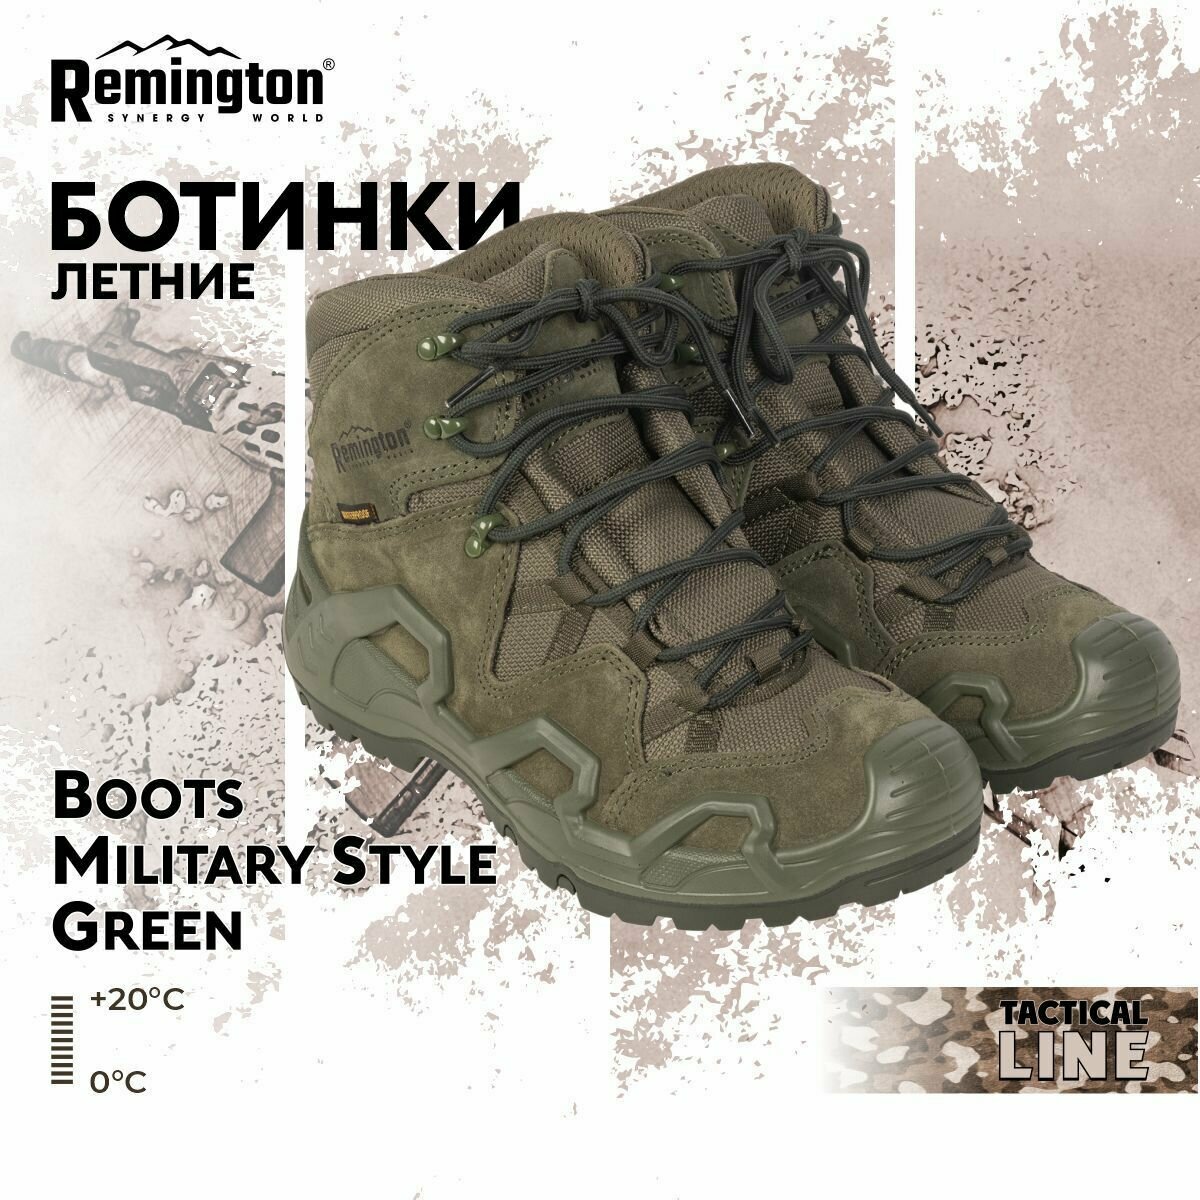 Ботинки Remington Boots Military Style Green р. 43 RB4435-306